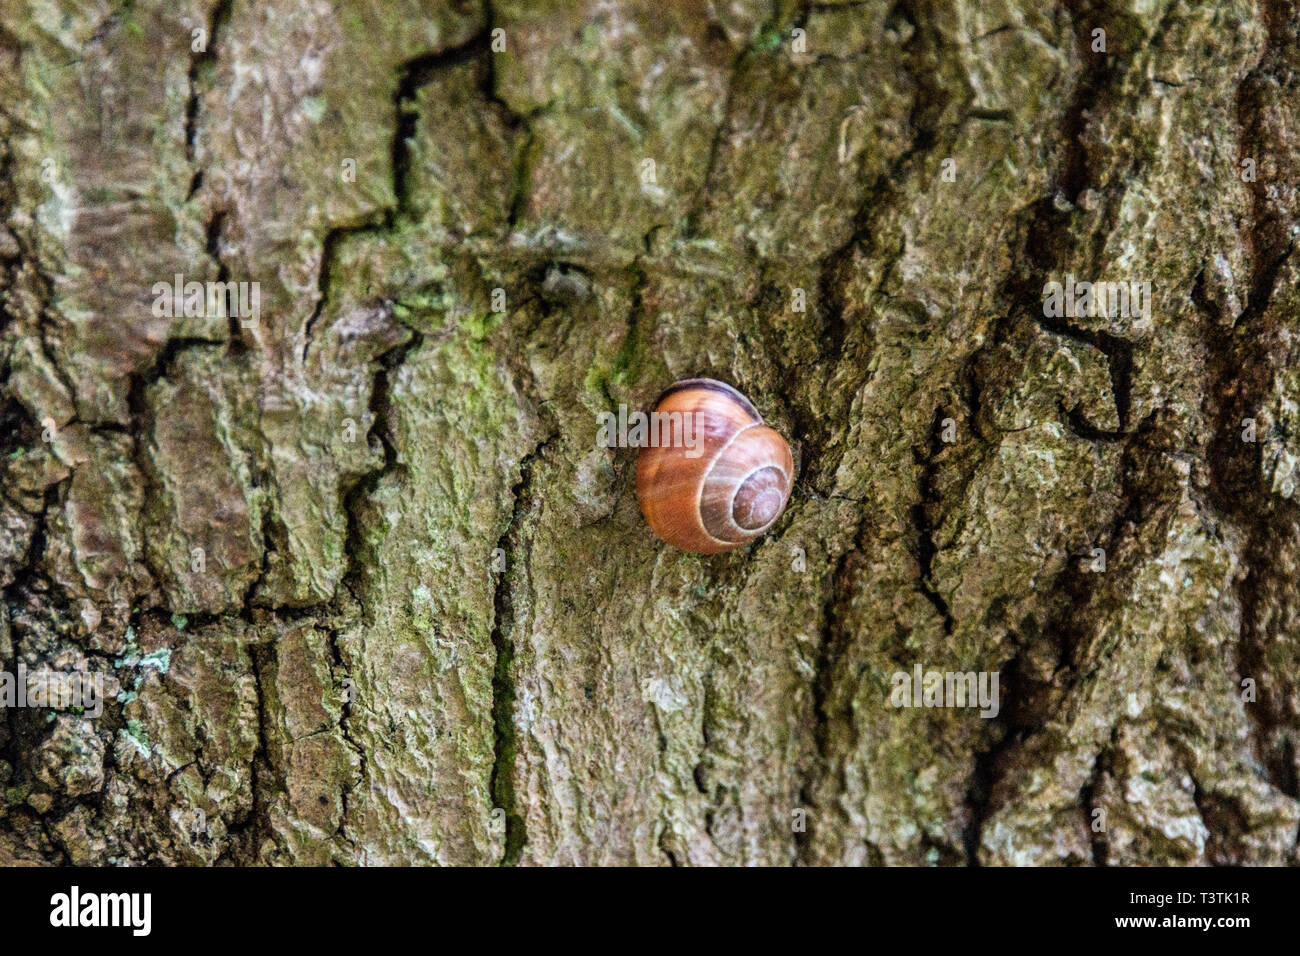 Un petit escargot brun sur un tronc d'arbre Banque D'Images